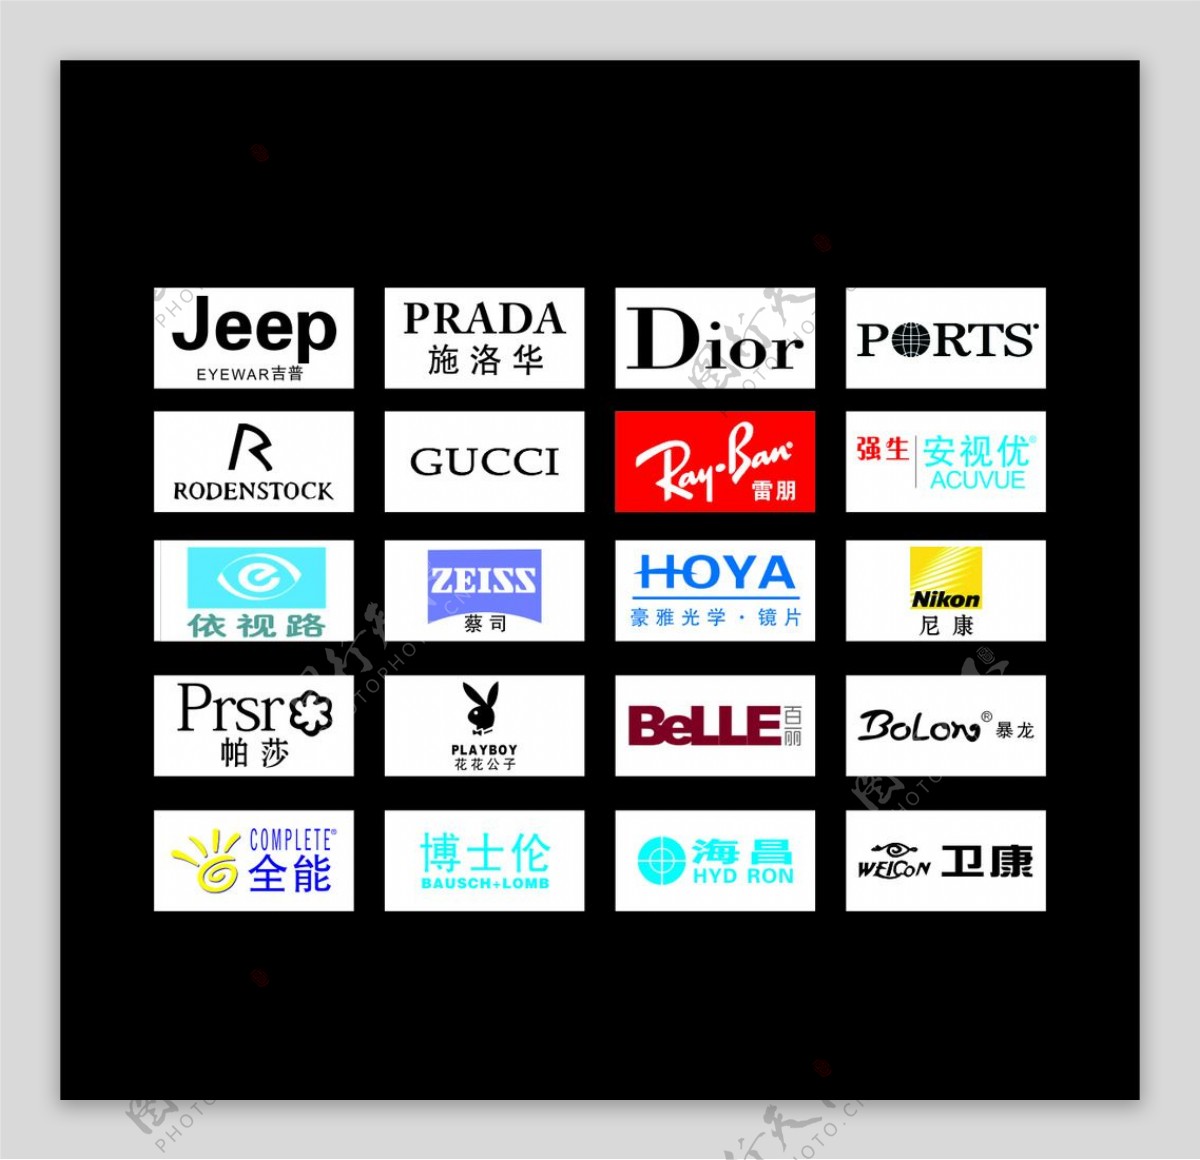 华为品牌价值高达380亿美元 Brand Finance全球品牌价值榜升至25